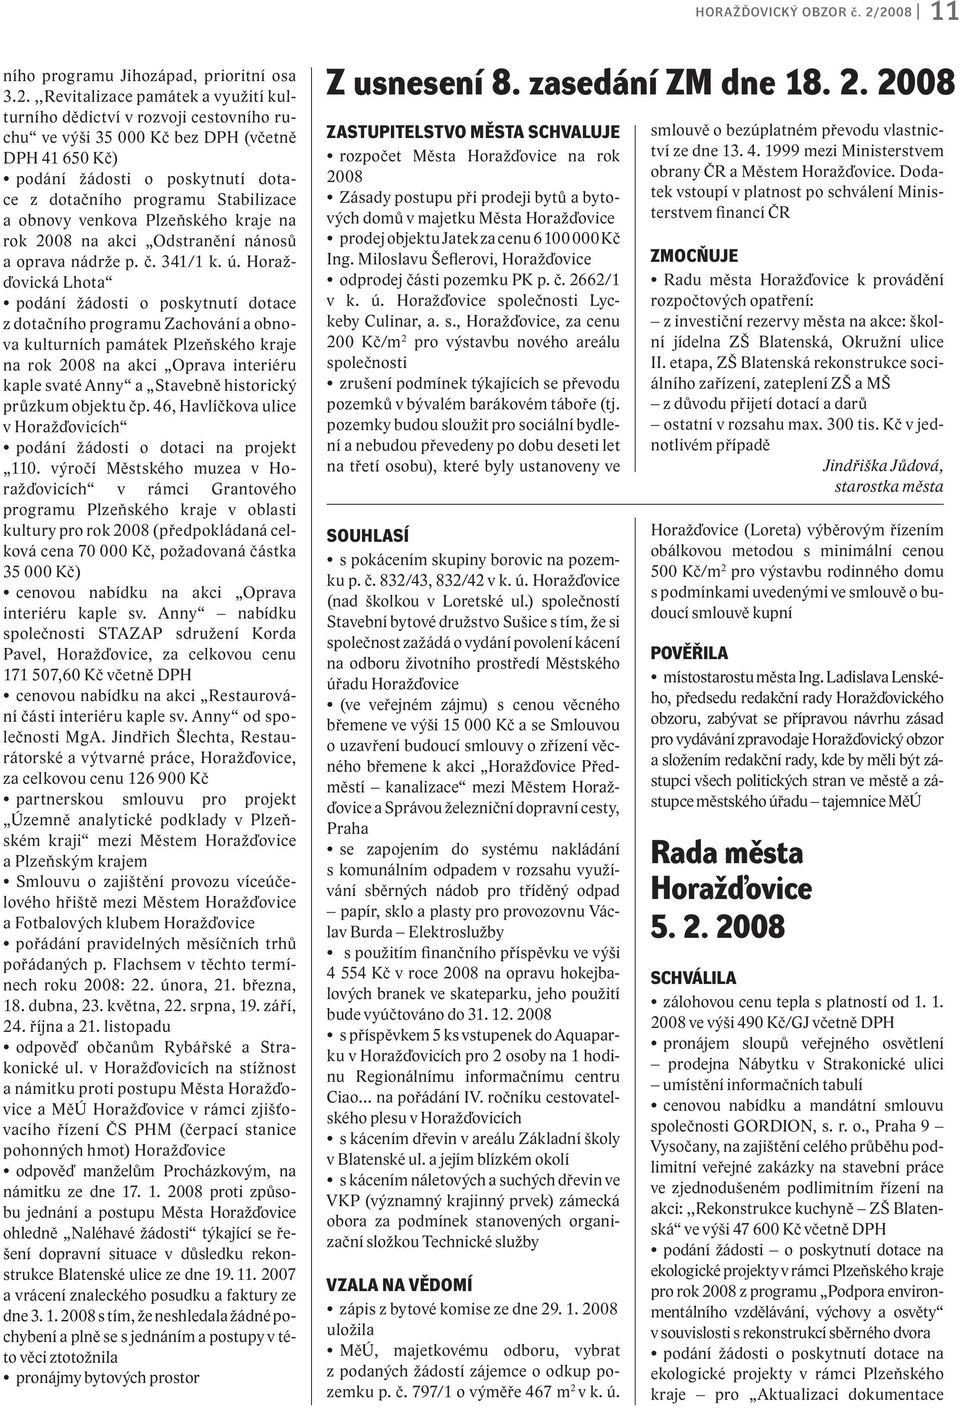 poskytnutí dotace z dotačního programu Stabilizace a obnovy venkova Plzeňského kraje na rok 2008 na akci Odstranění nánosů a oprava nádrže p. č. 341/1 k. ú.